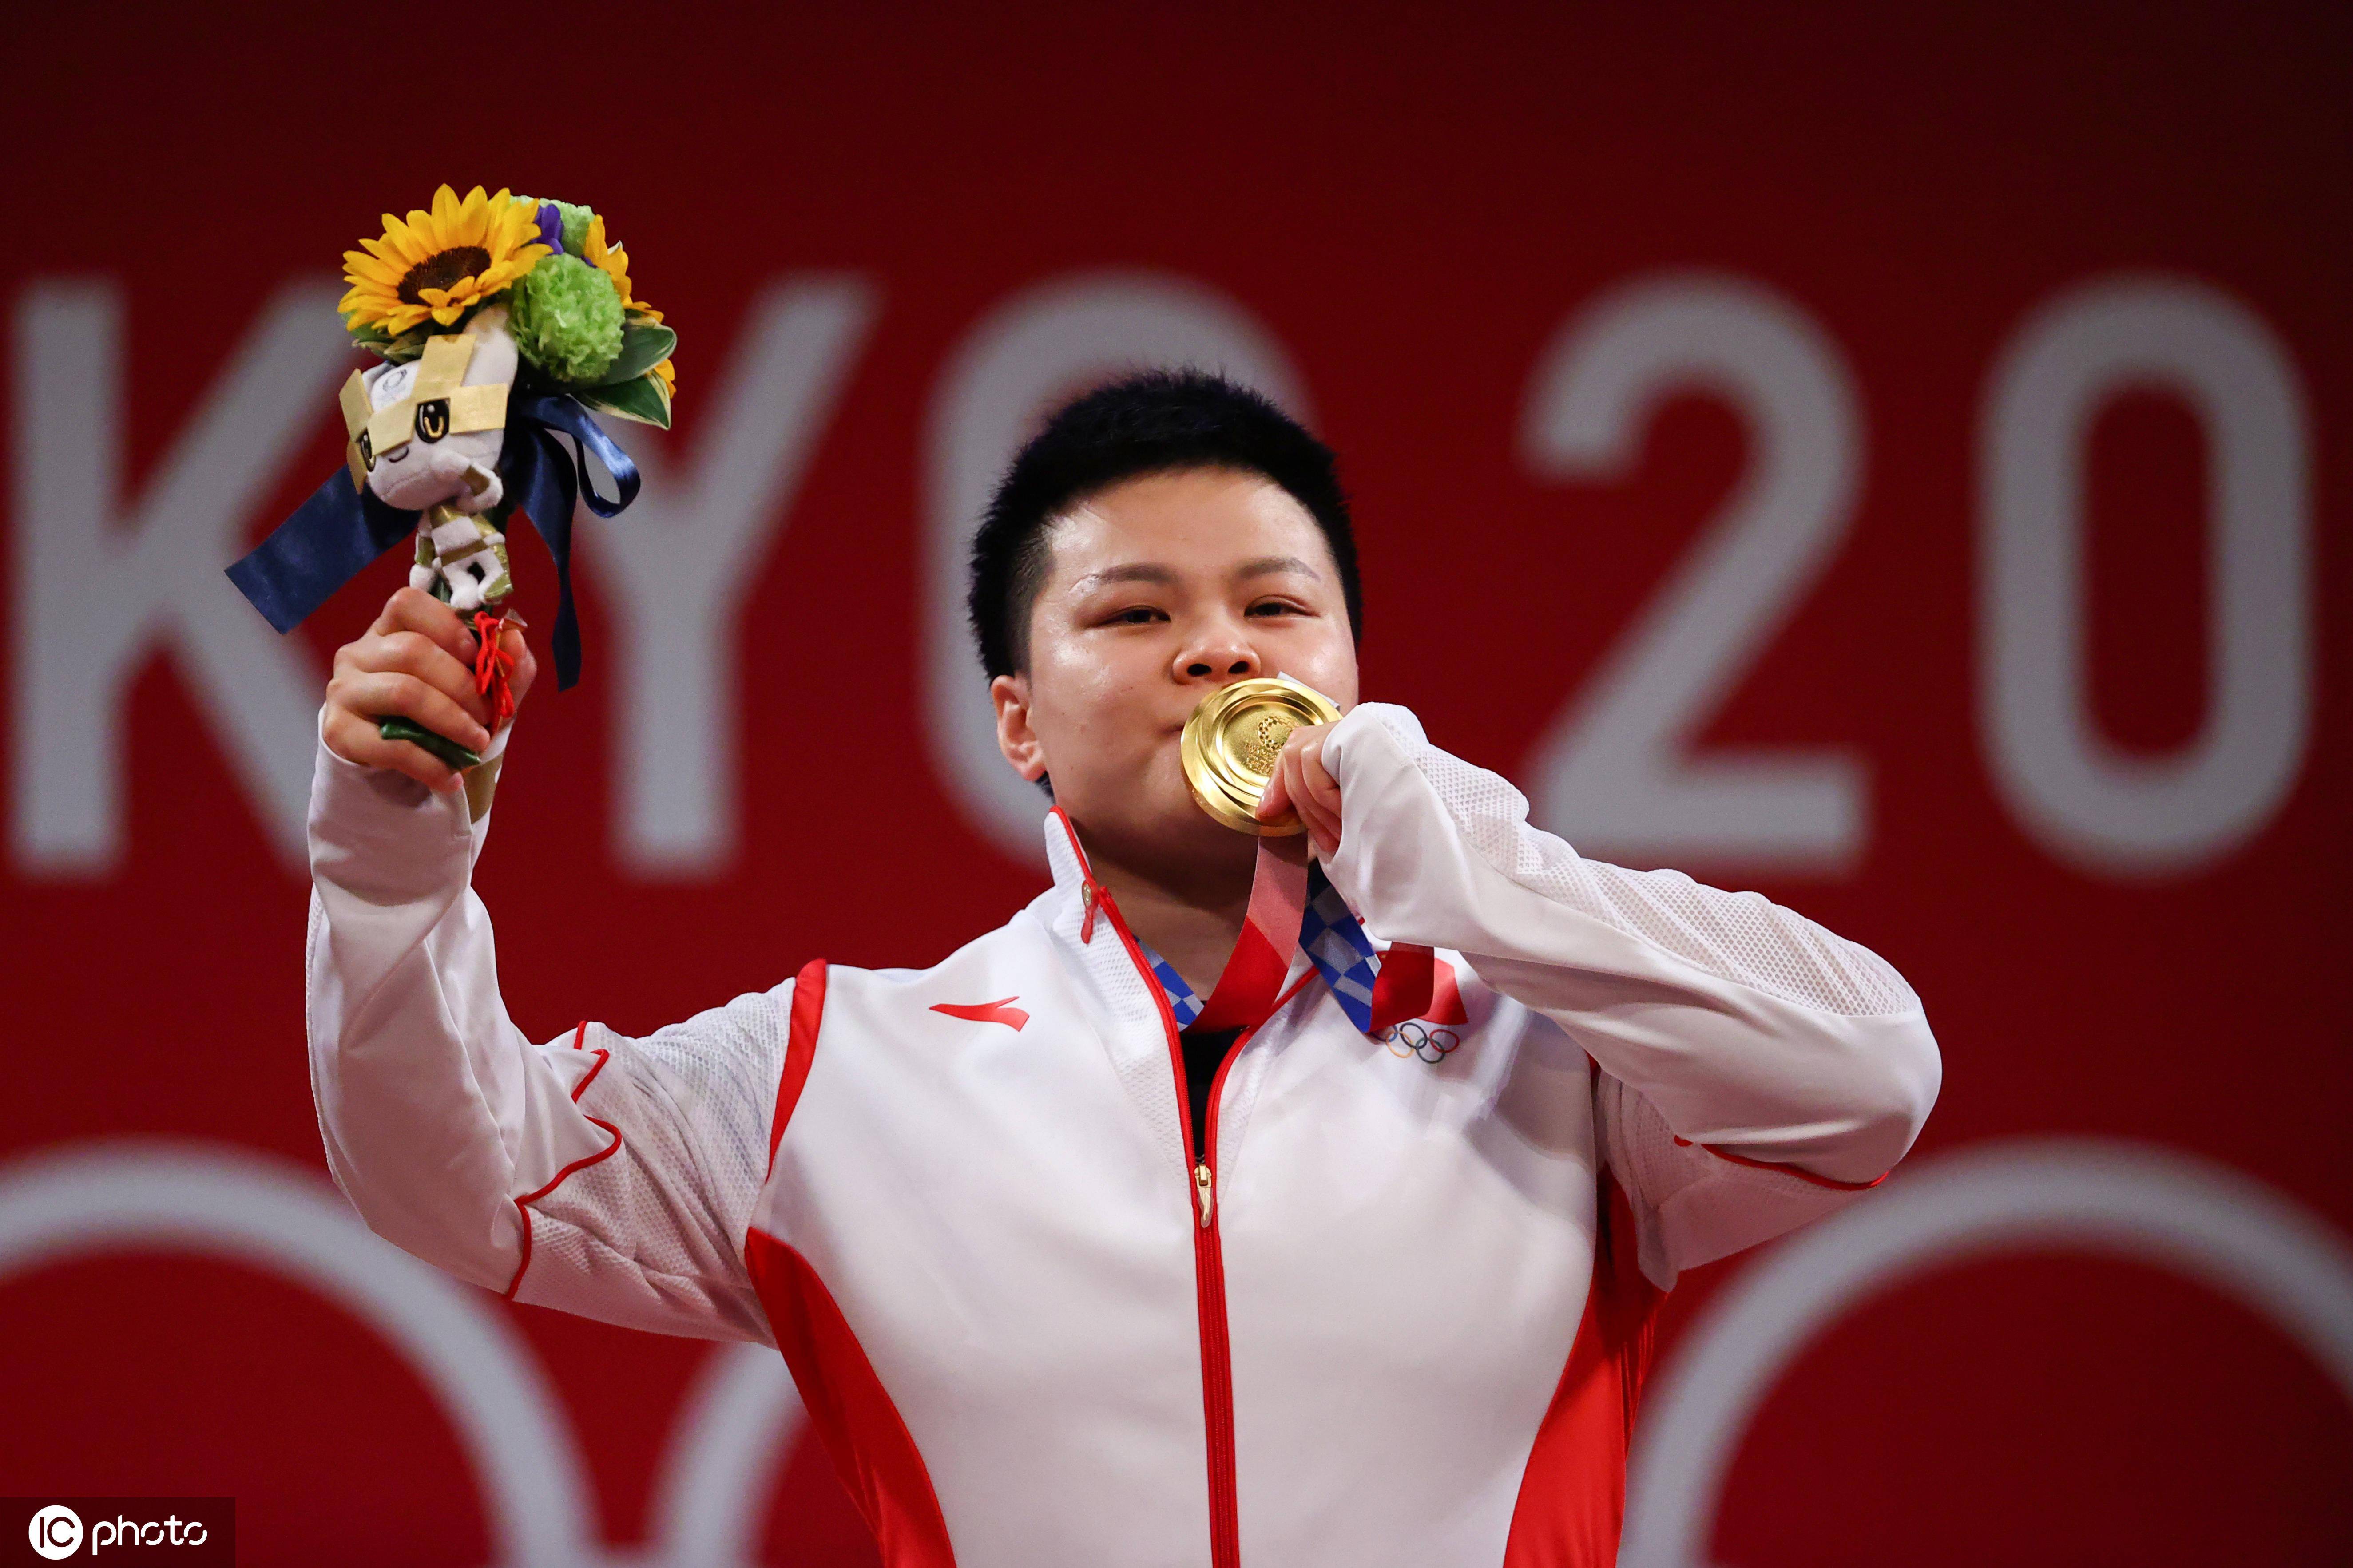 中国举重队天神下凡再夺一金,汪周雨赢下87公斤级奥运金牌